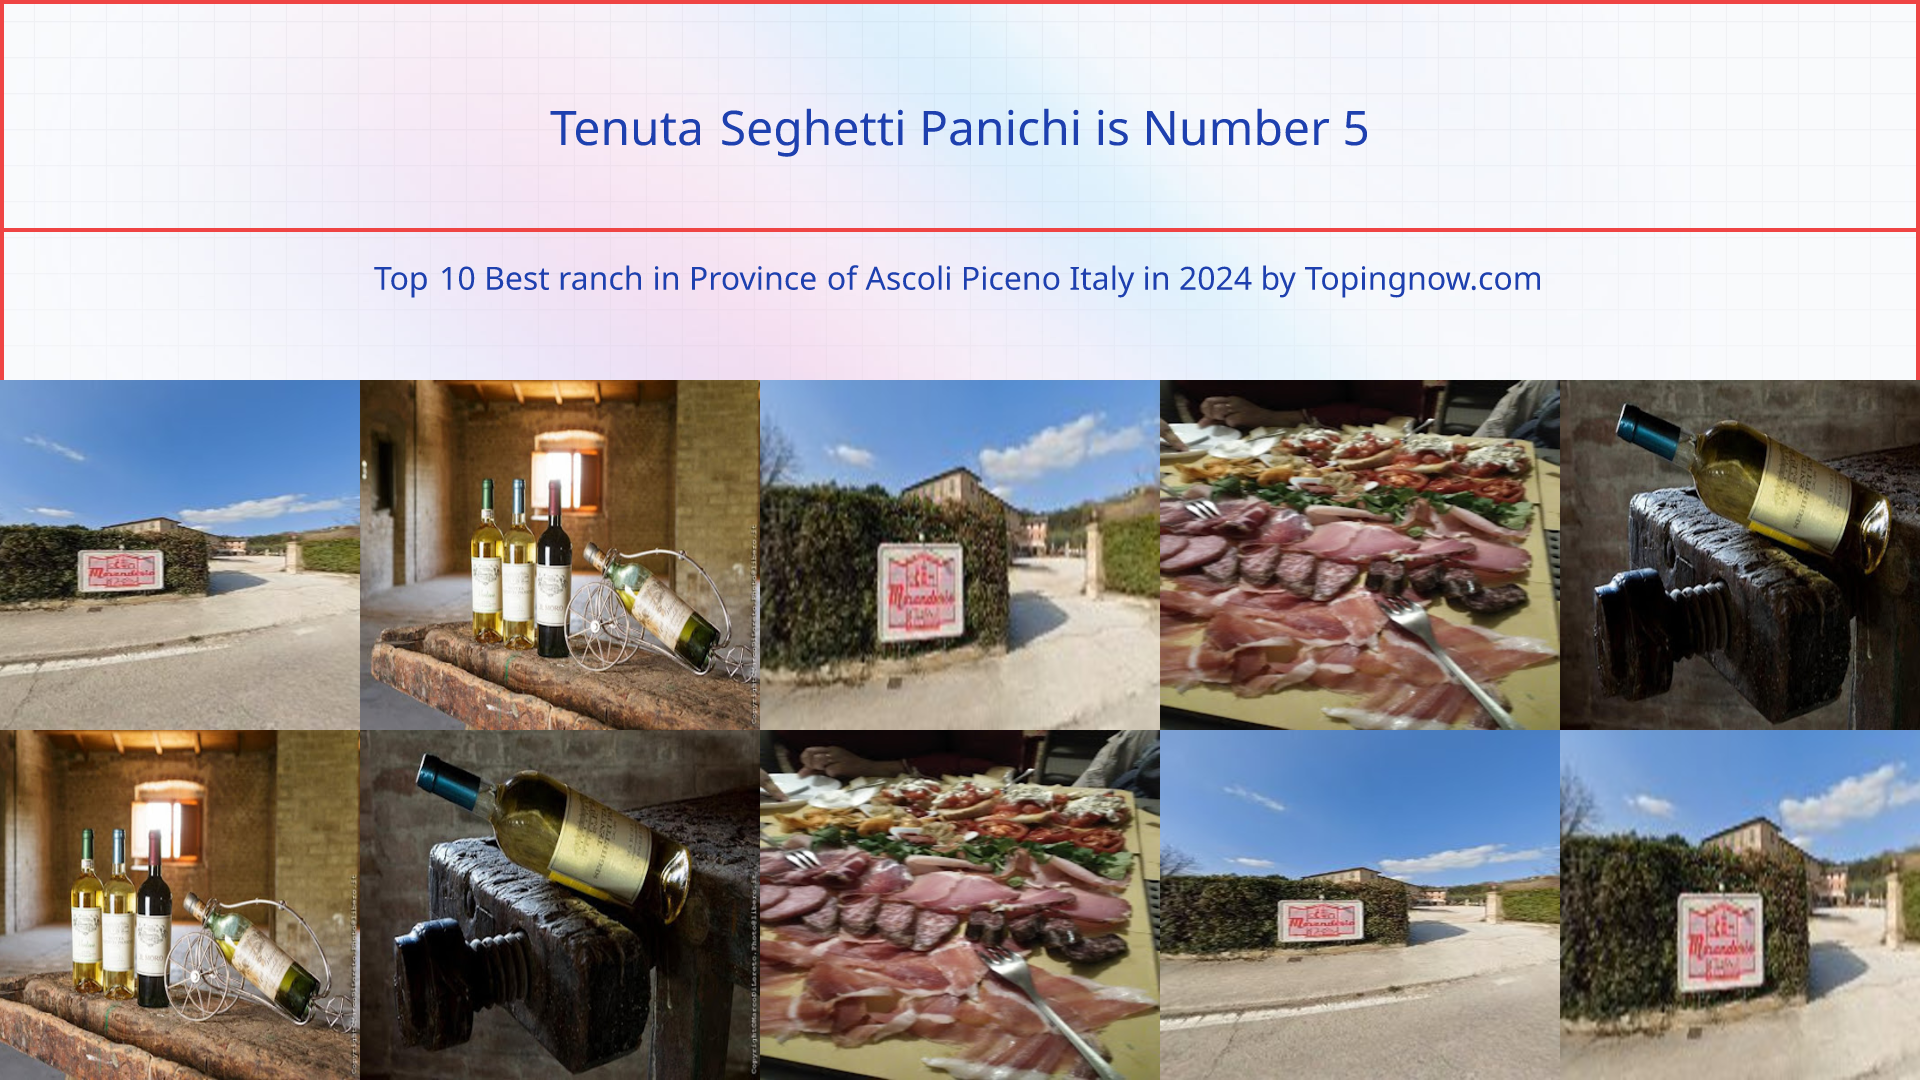 Tenuta Seghetti Panichi: Top 10 Best ranch in Province of Ascoli Piceno Italy in 2024